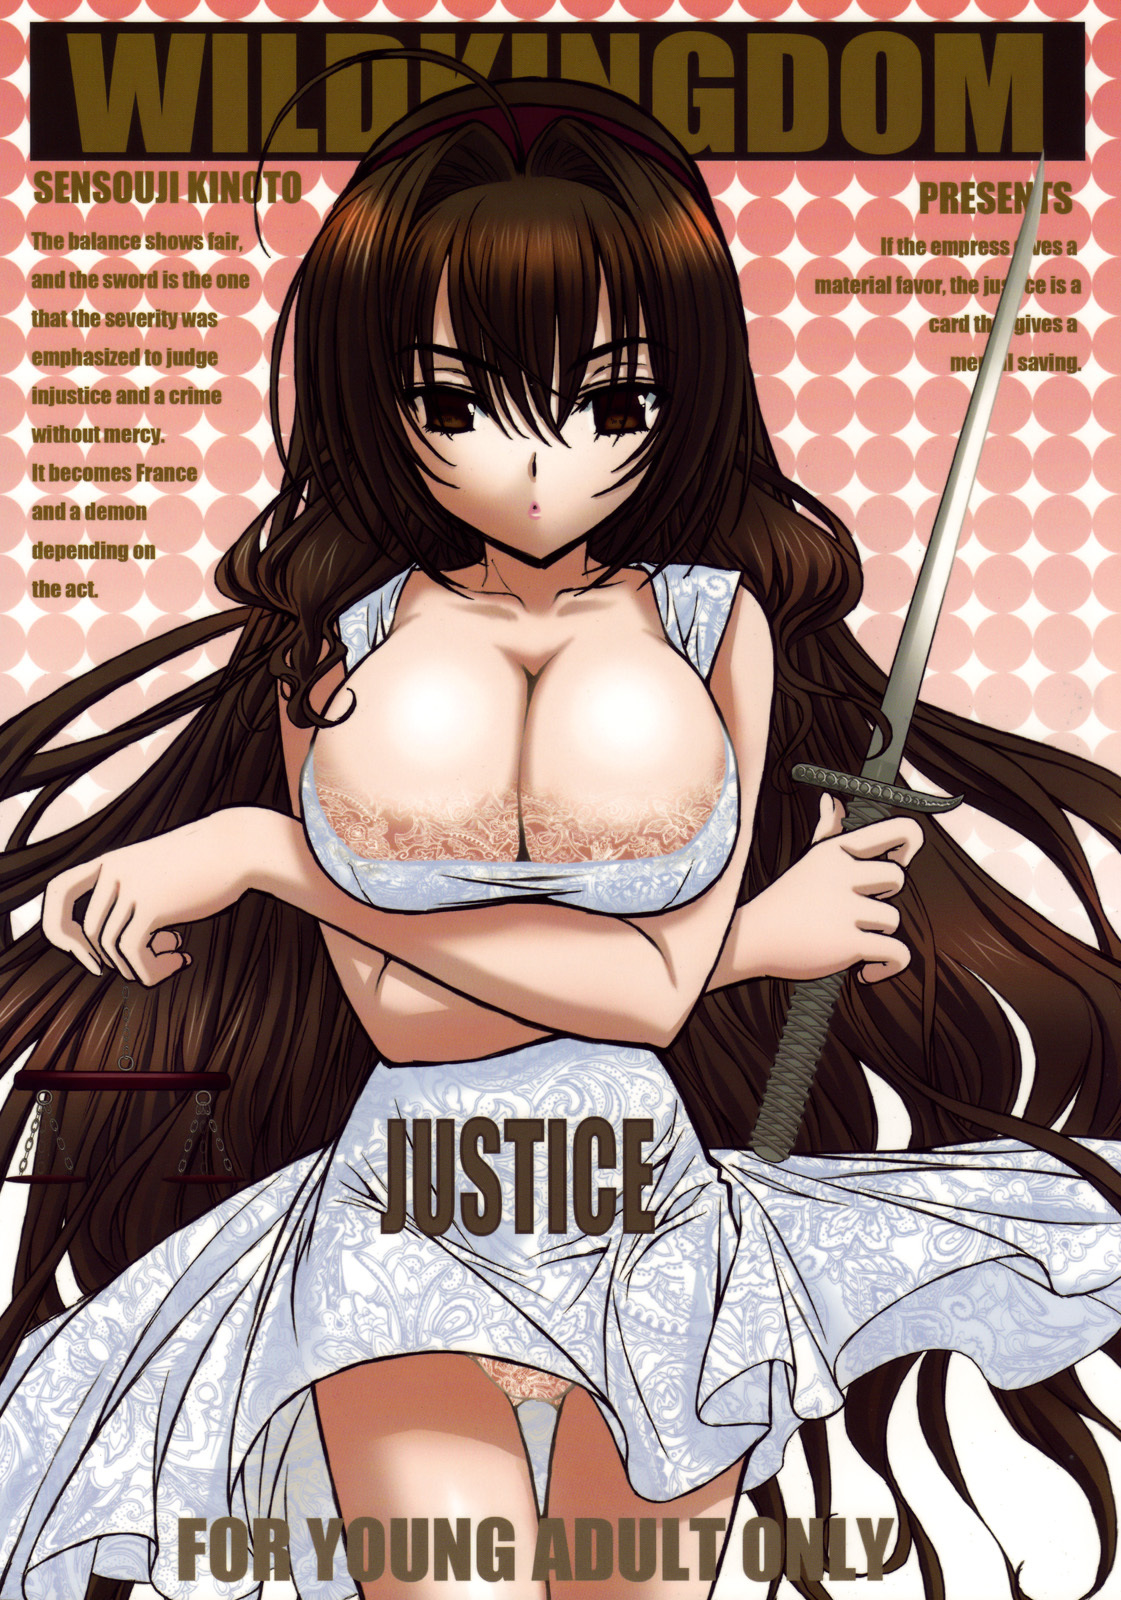 (C76) [Wild Kingdom (Sensouji Kinoto)] Justice page 1 full